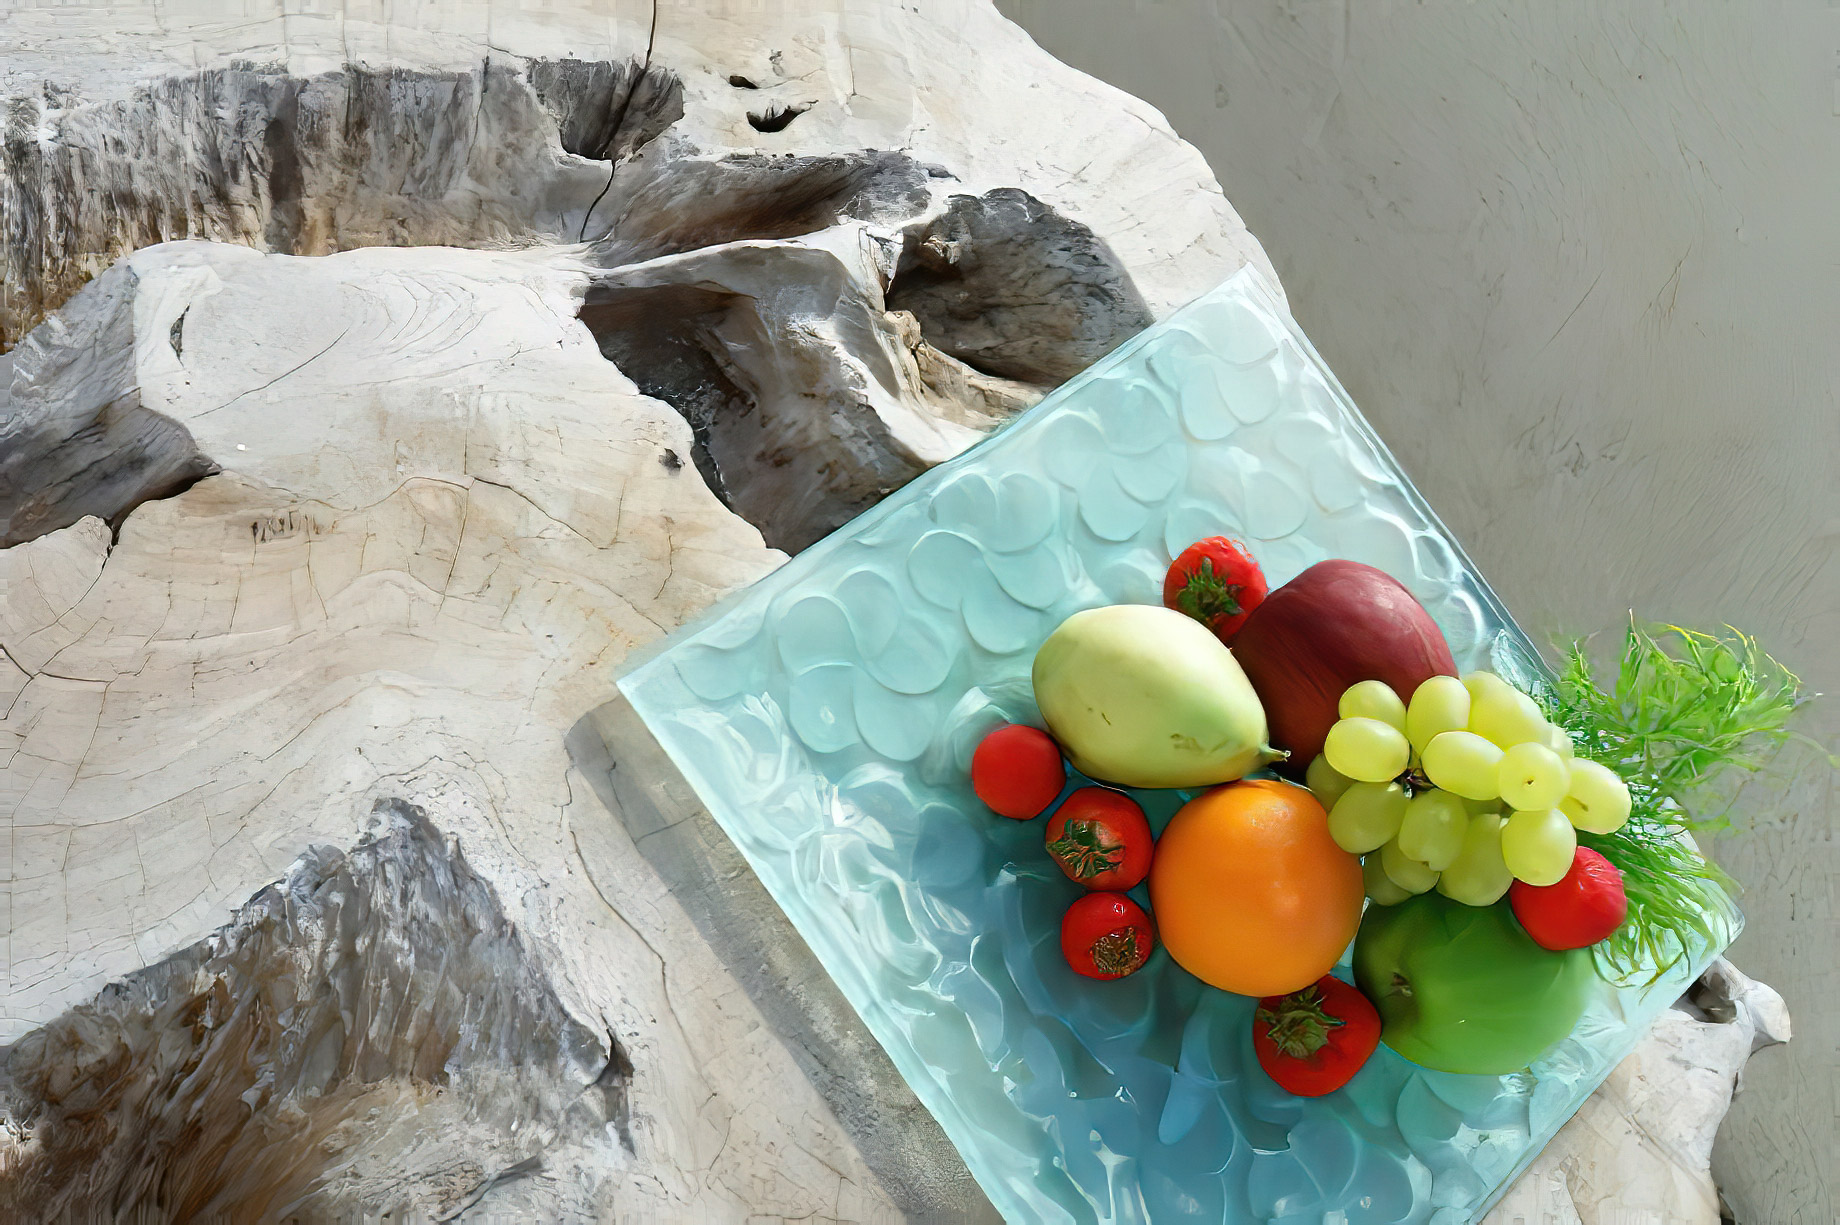 Mystique Hotel Santorini – Oia, Santorini Island, Greece – Luxury Service Fresh Fruit Plate